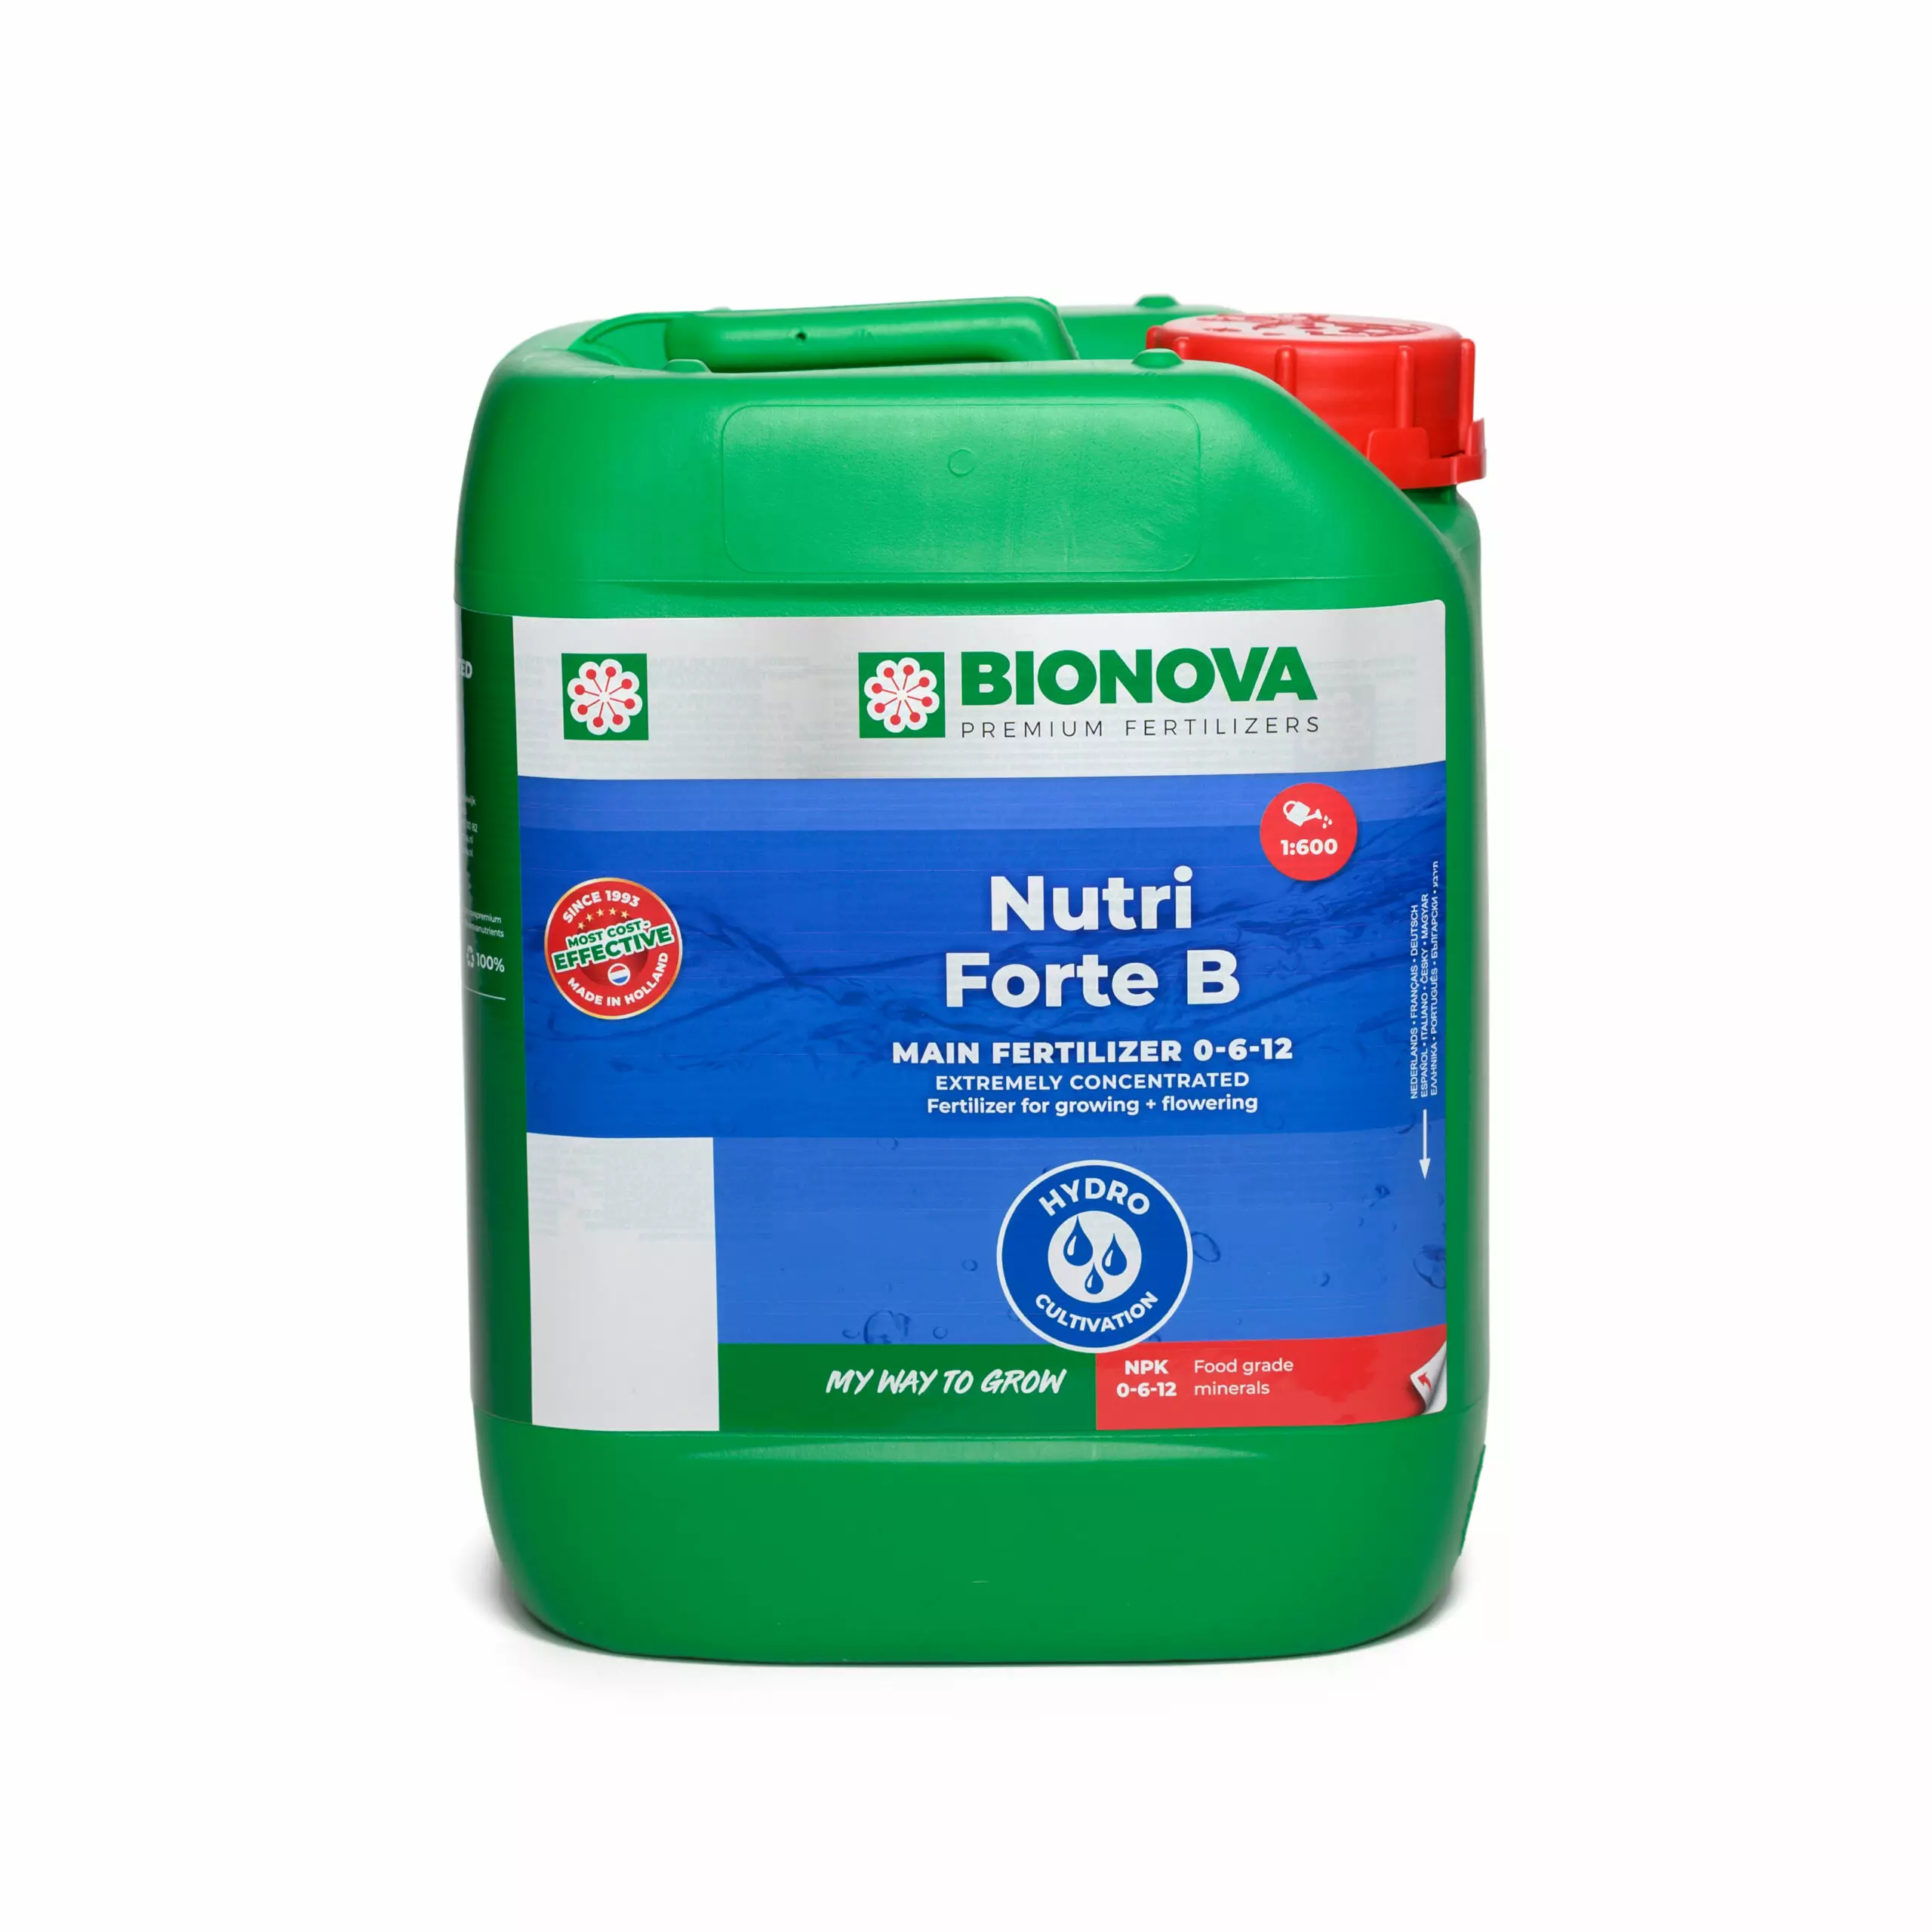 Bionova Nutri-Forte B 5 Liter Bottle